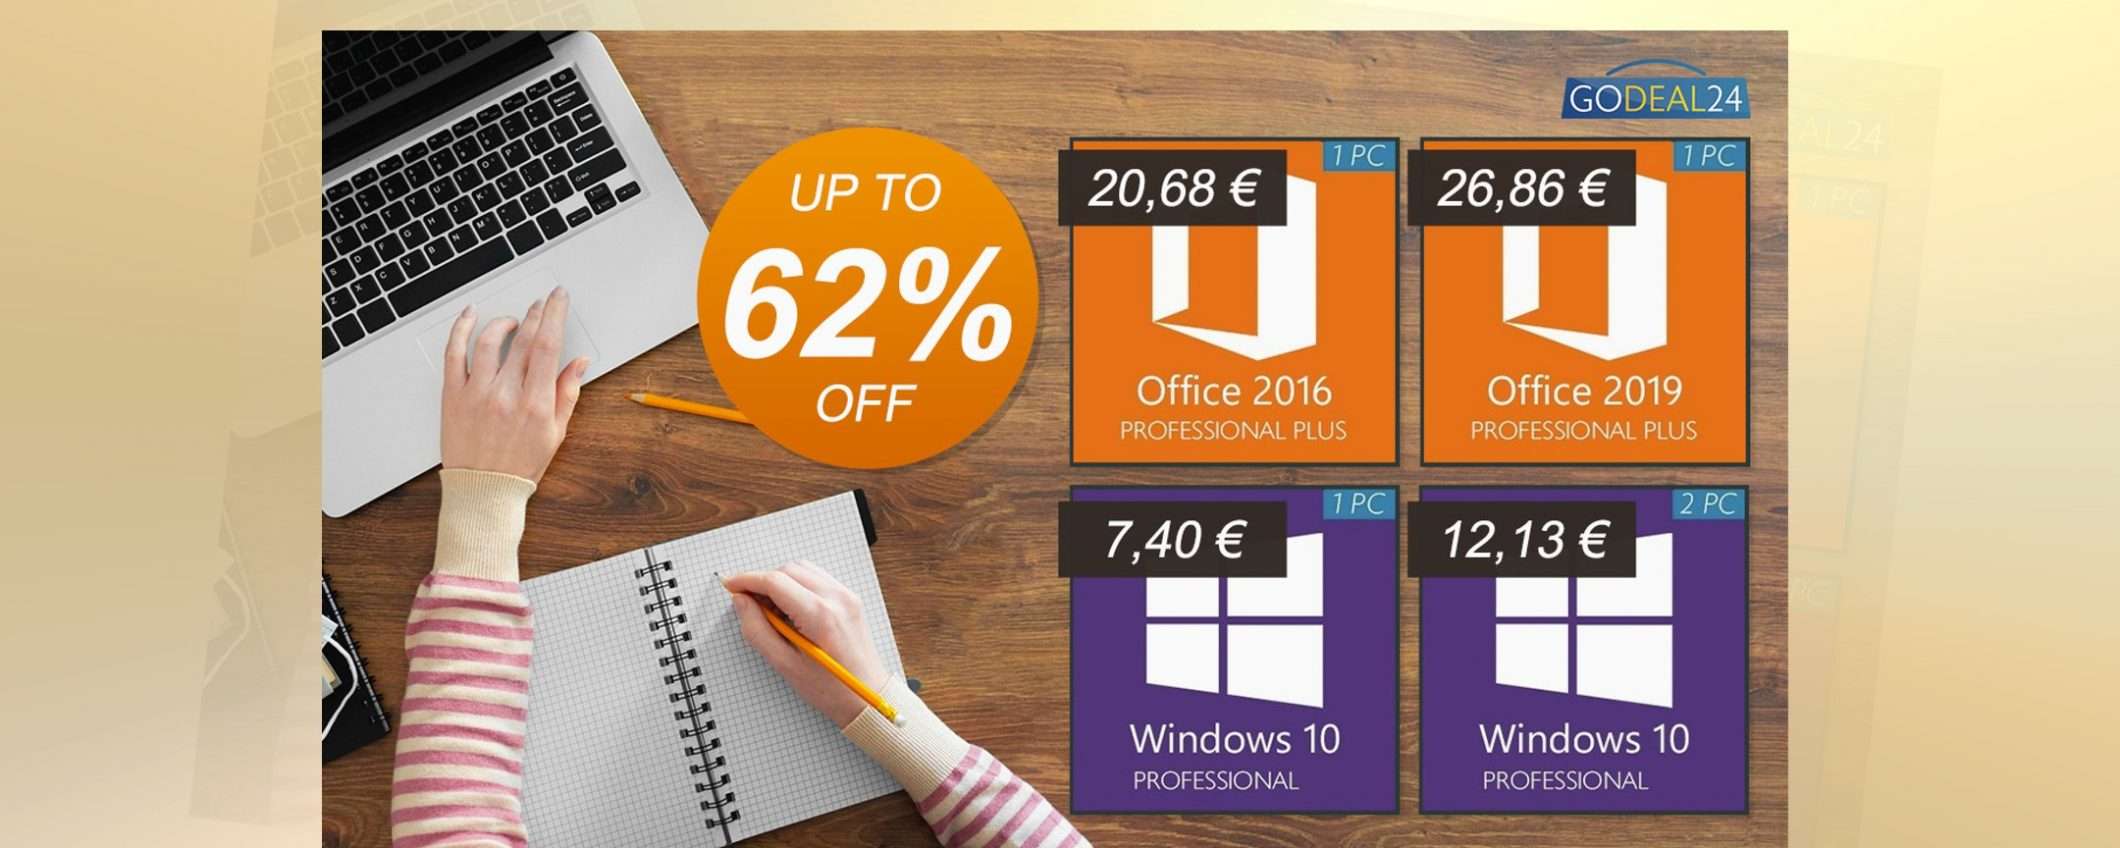 Offerta smart working Godeal24: Windows 10 Pro da 6€